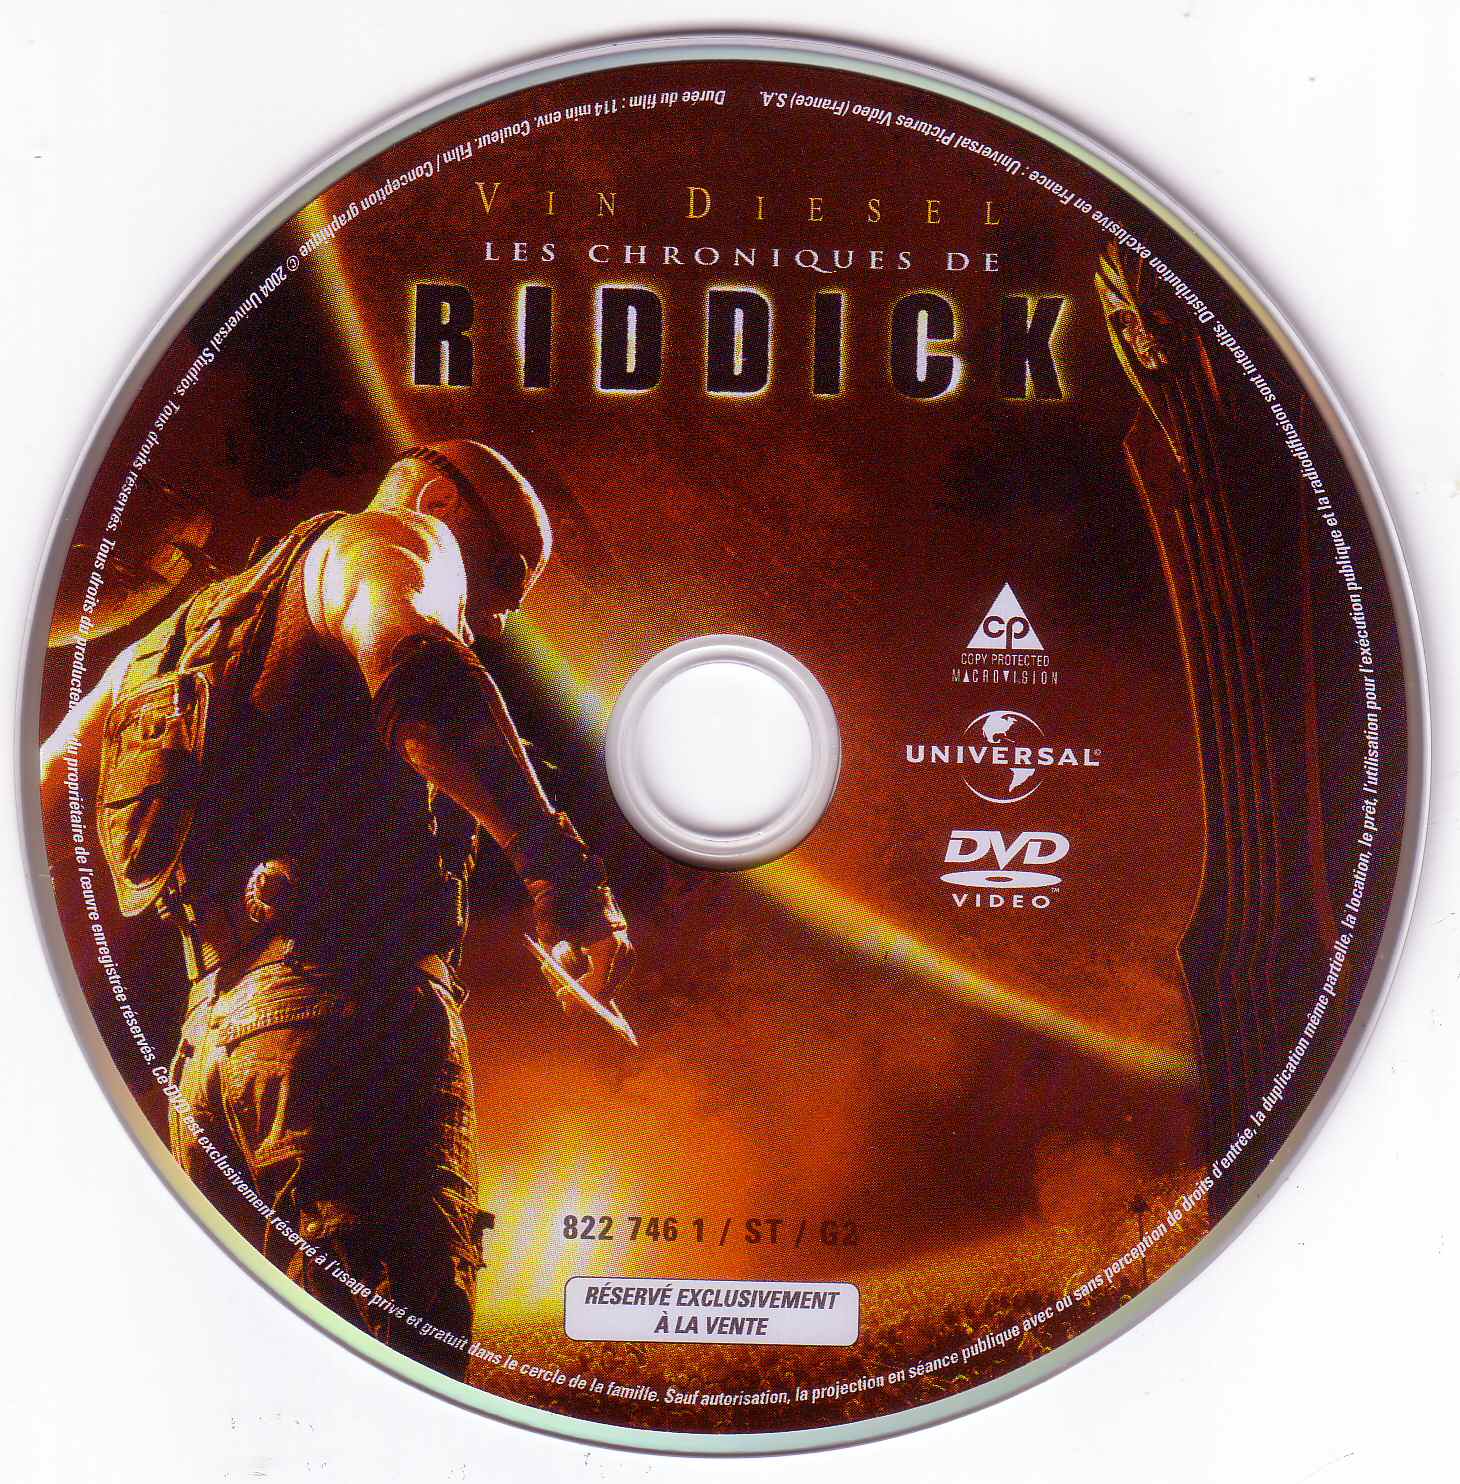 Les chroniques de Riddick v2